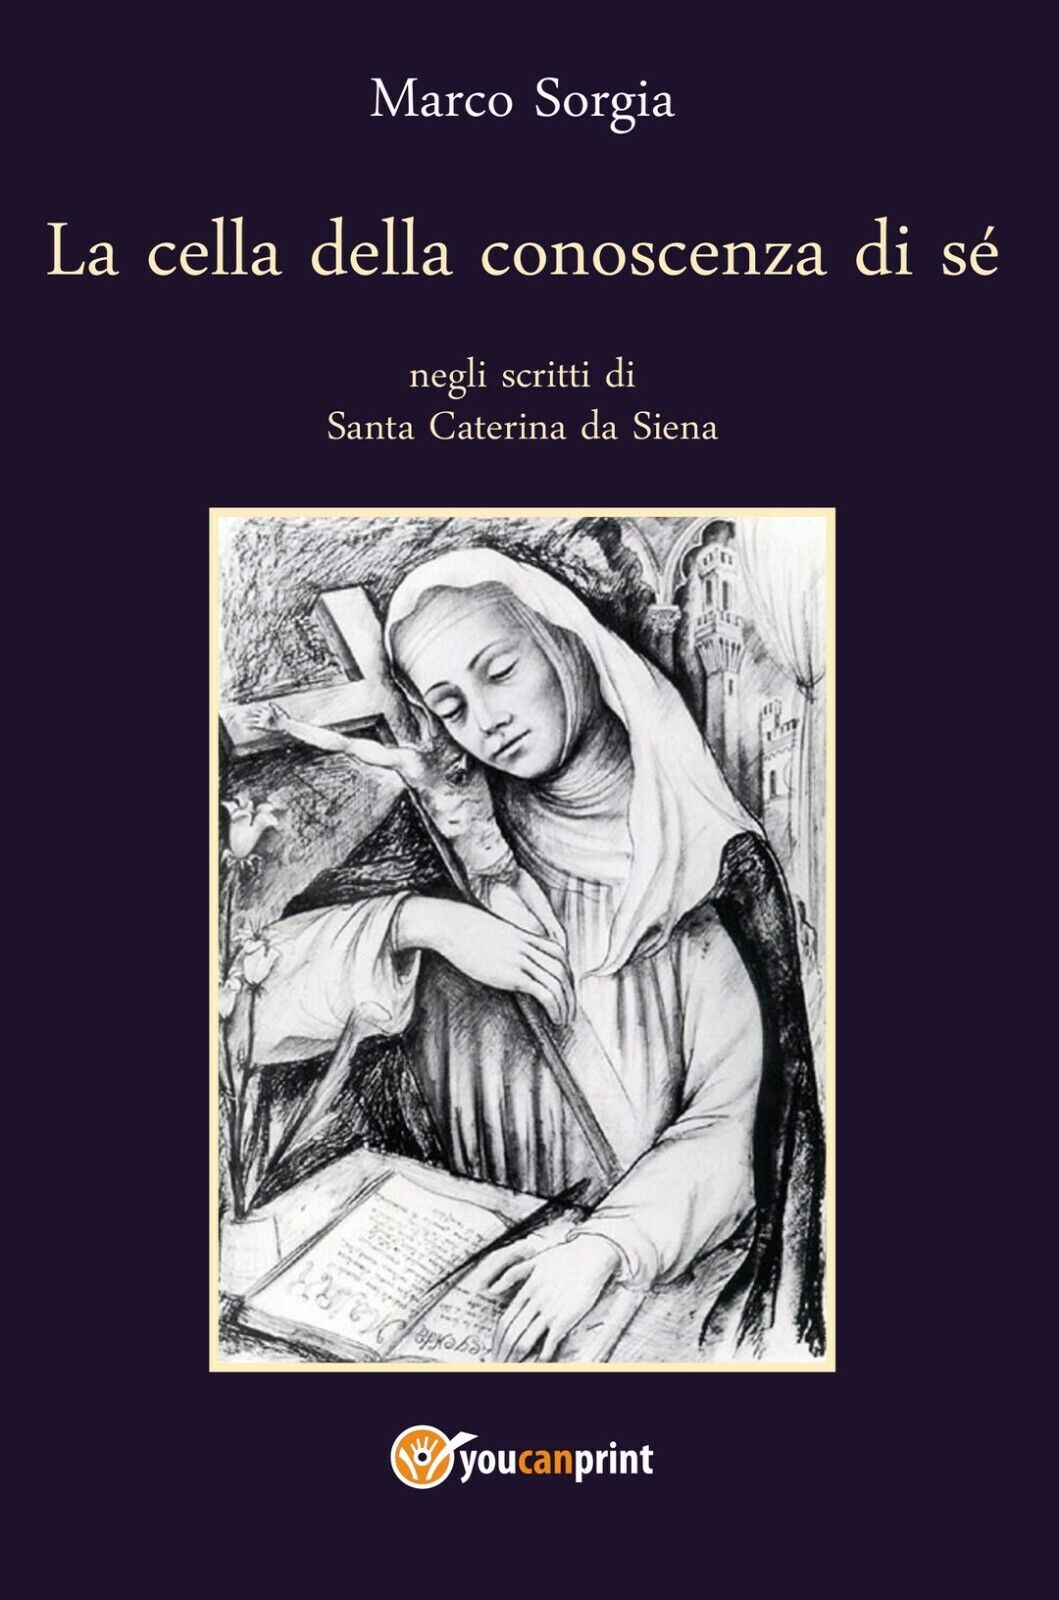 La cella della conoscenza di s? negli scritti di Santa Caterina da Siena, 2020 libro usato